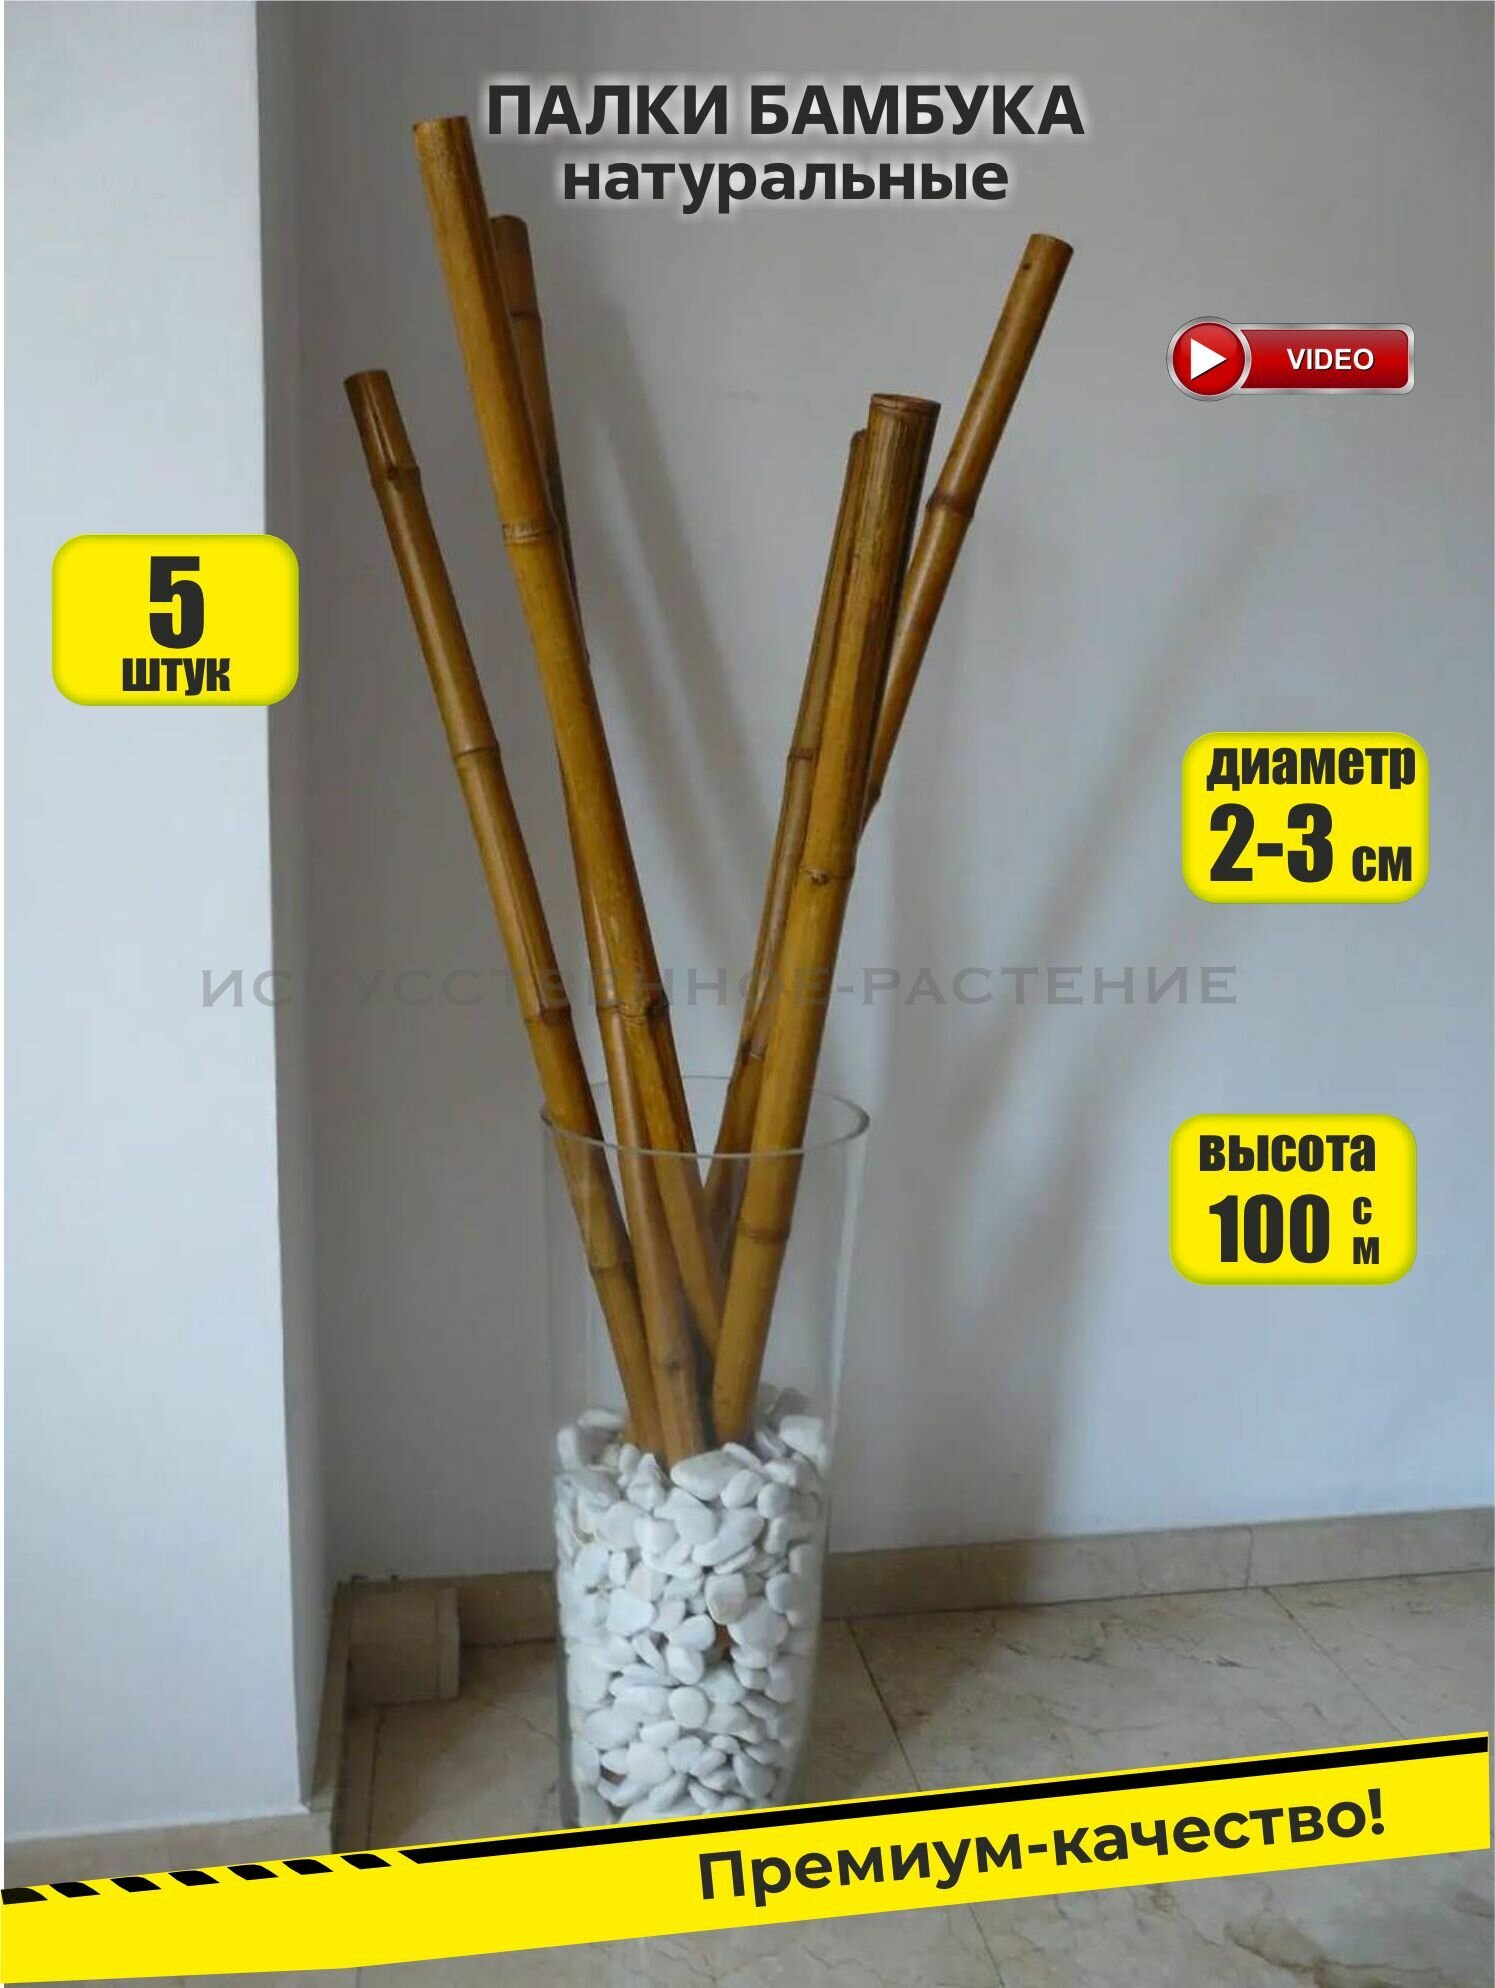 Палки бамбука, 5 штук, 100 см